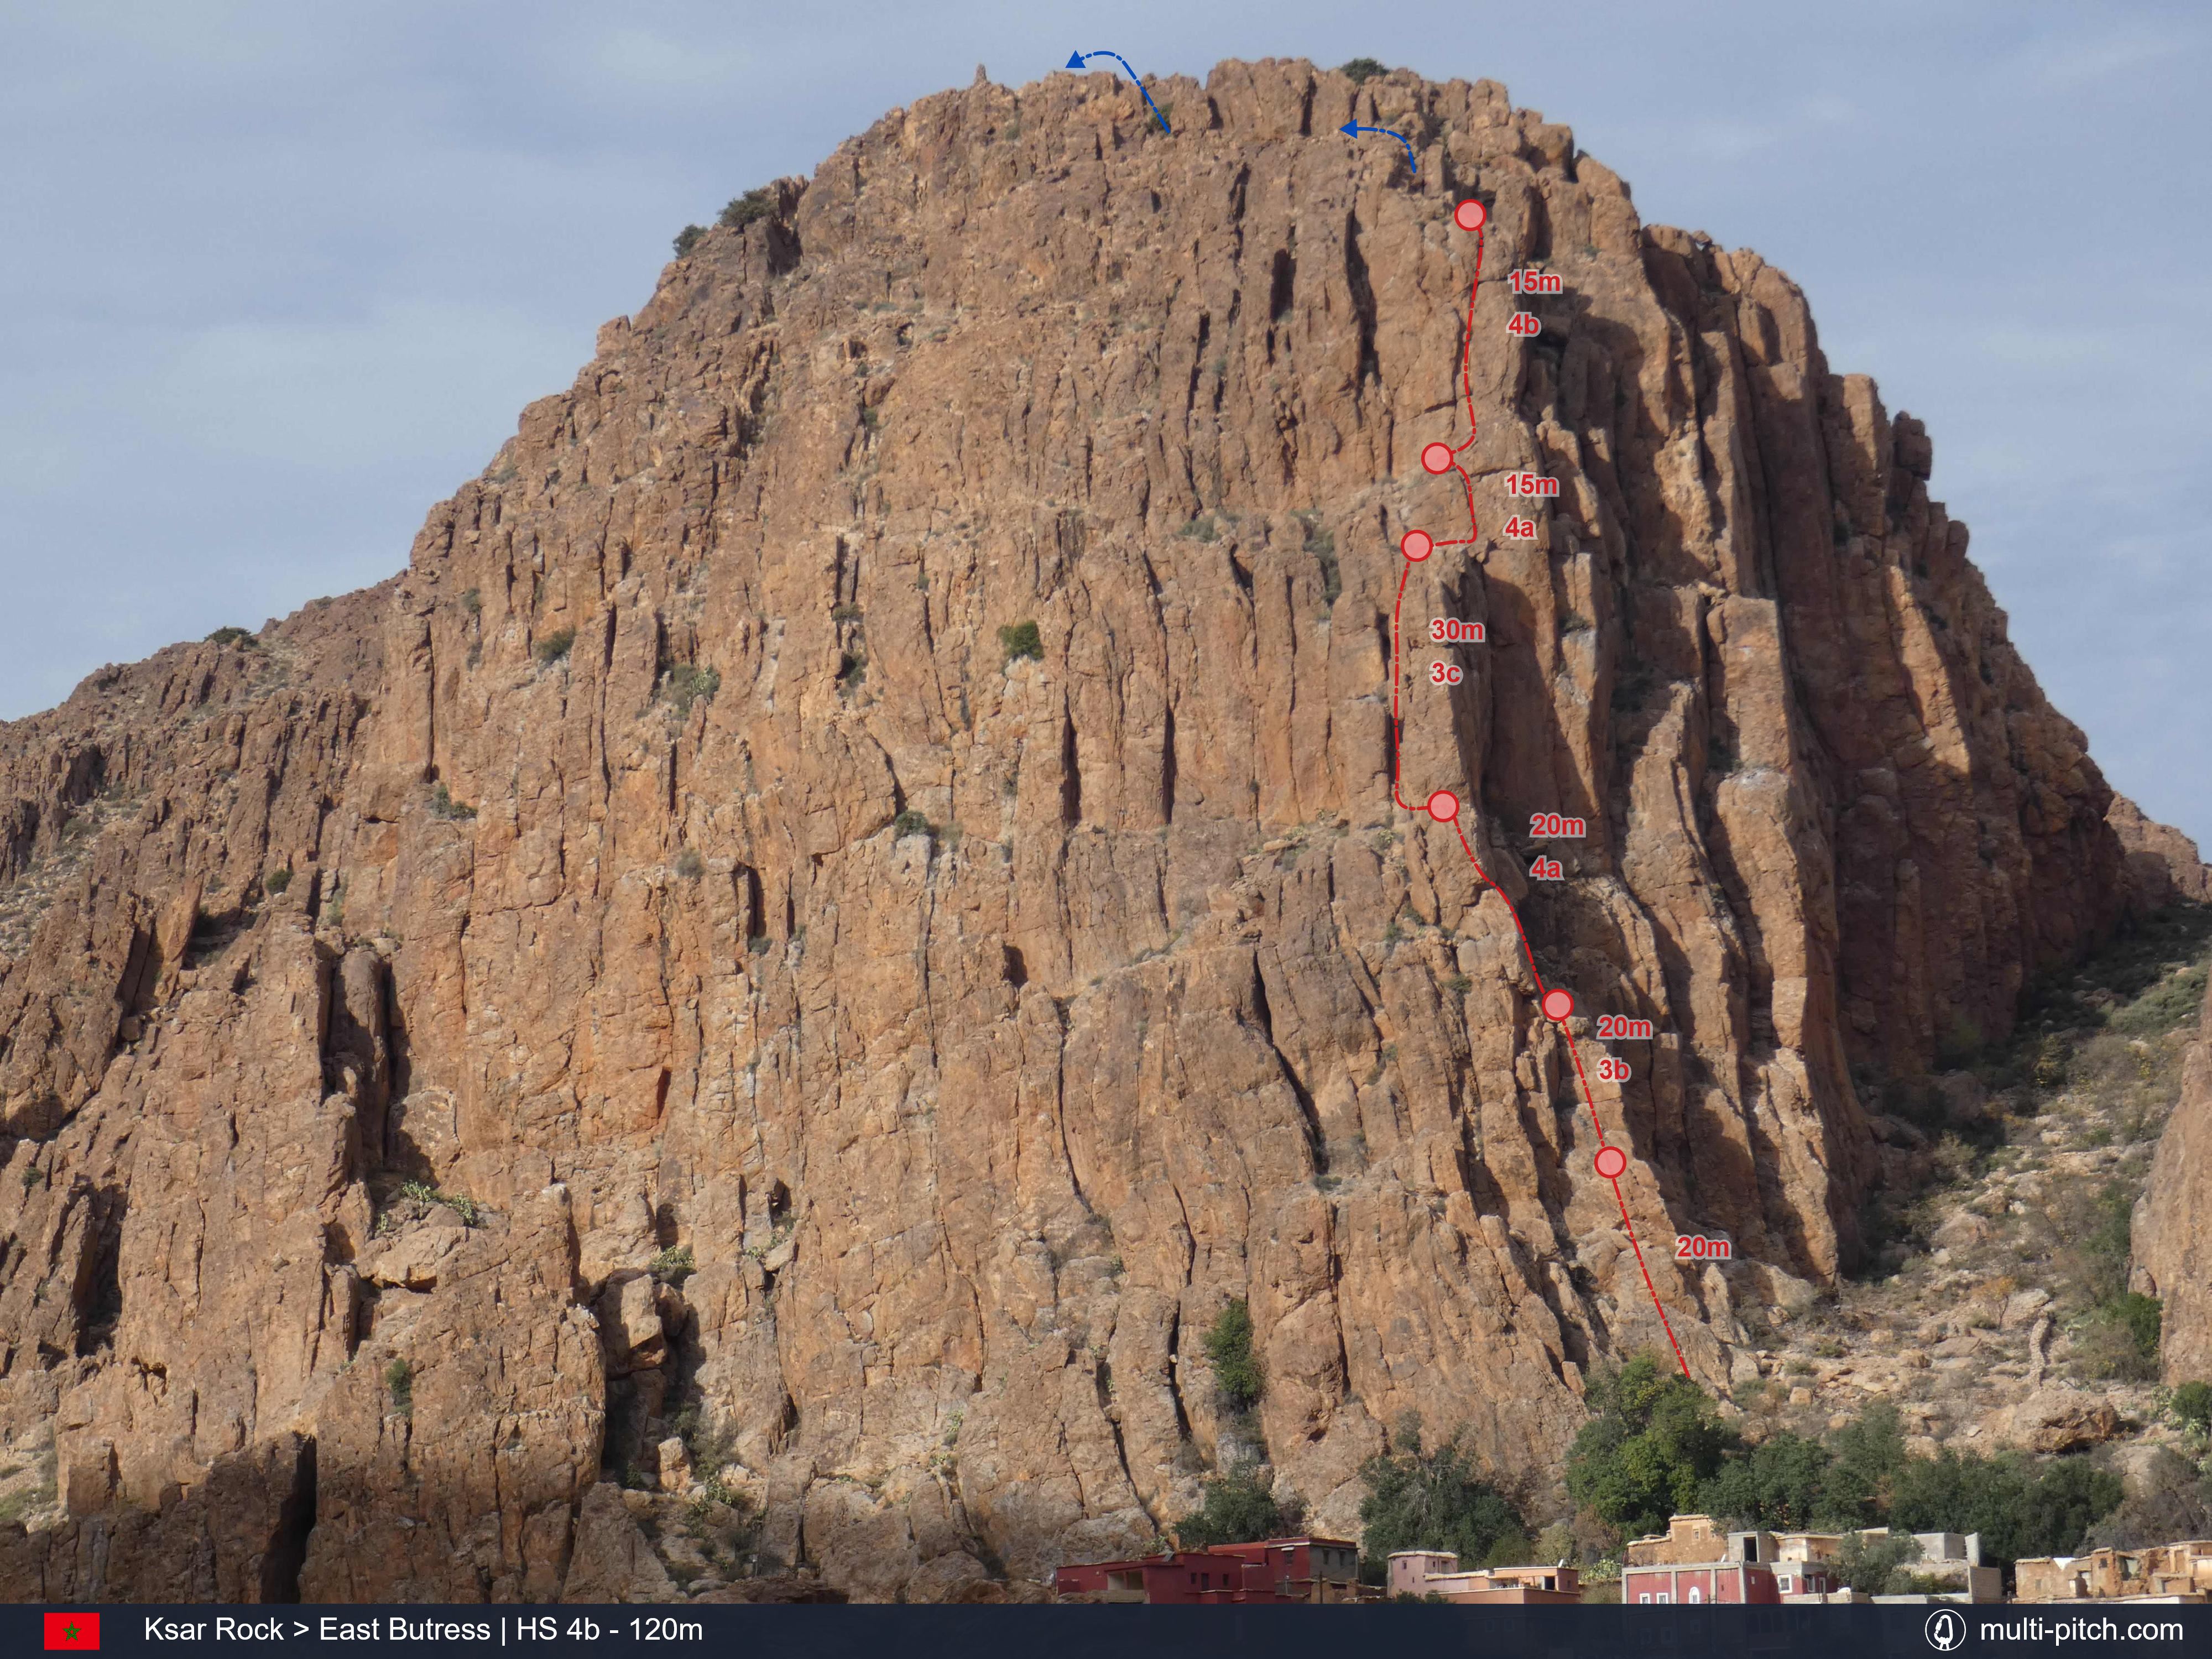 Ksar rock offers easy trad climbing Morocco